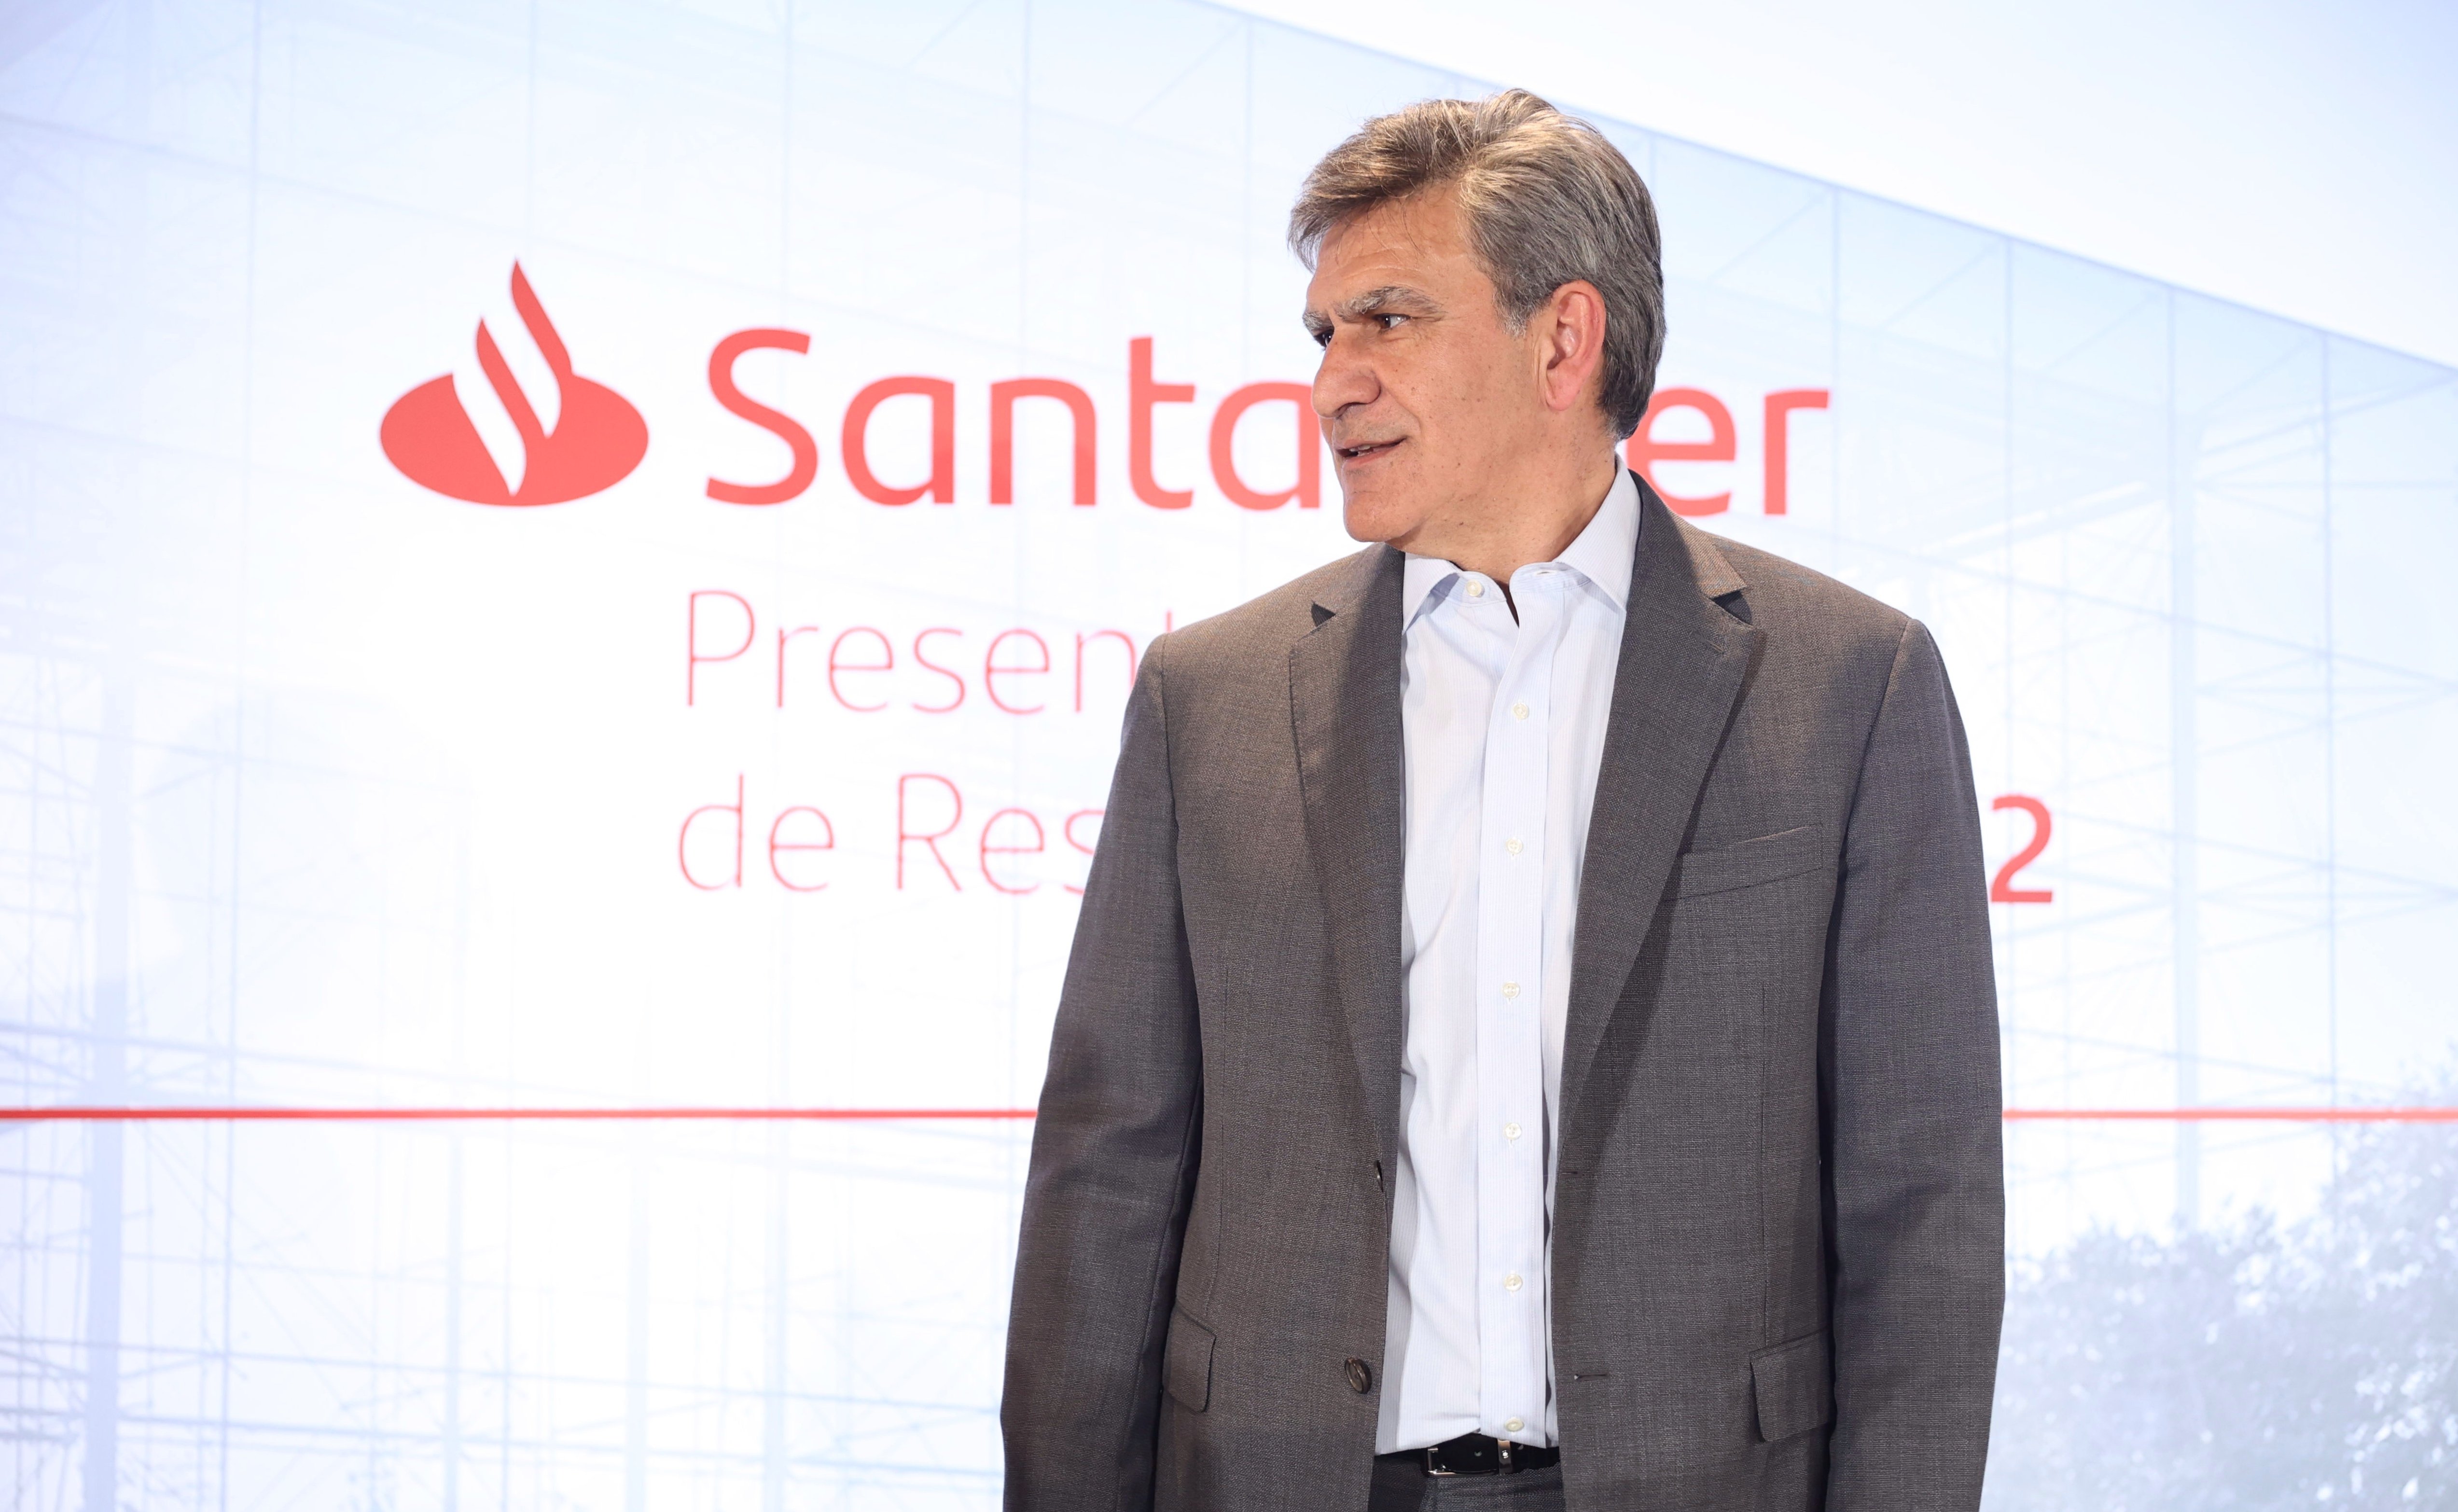 El Banco Santander ganó 7.316 millones de euros hasta septiembre, un 25% más